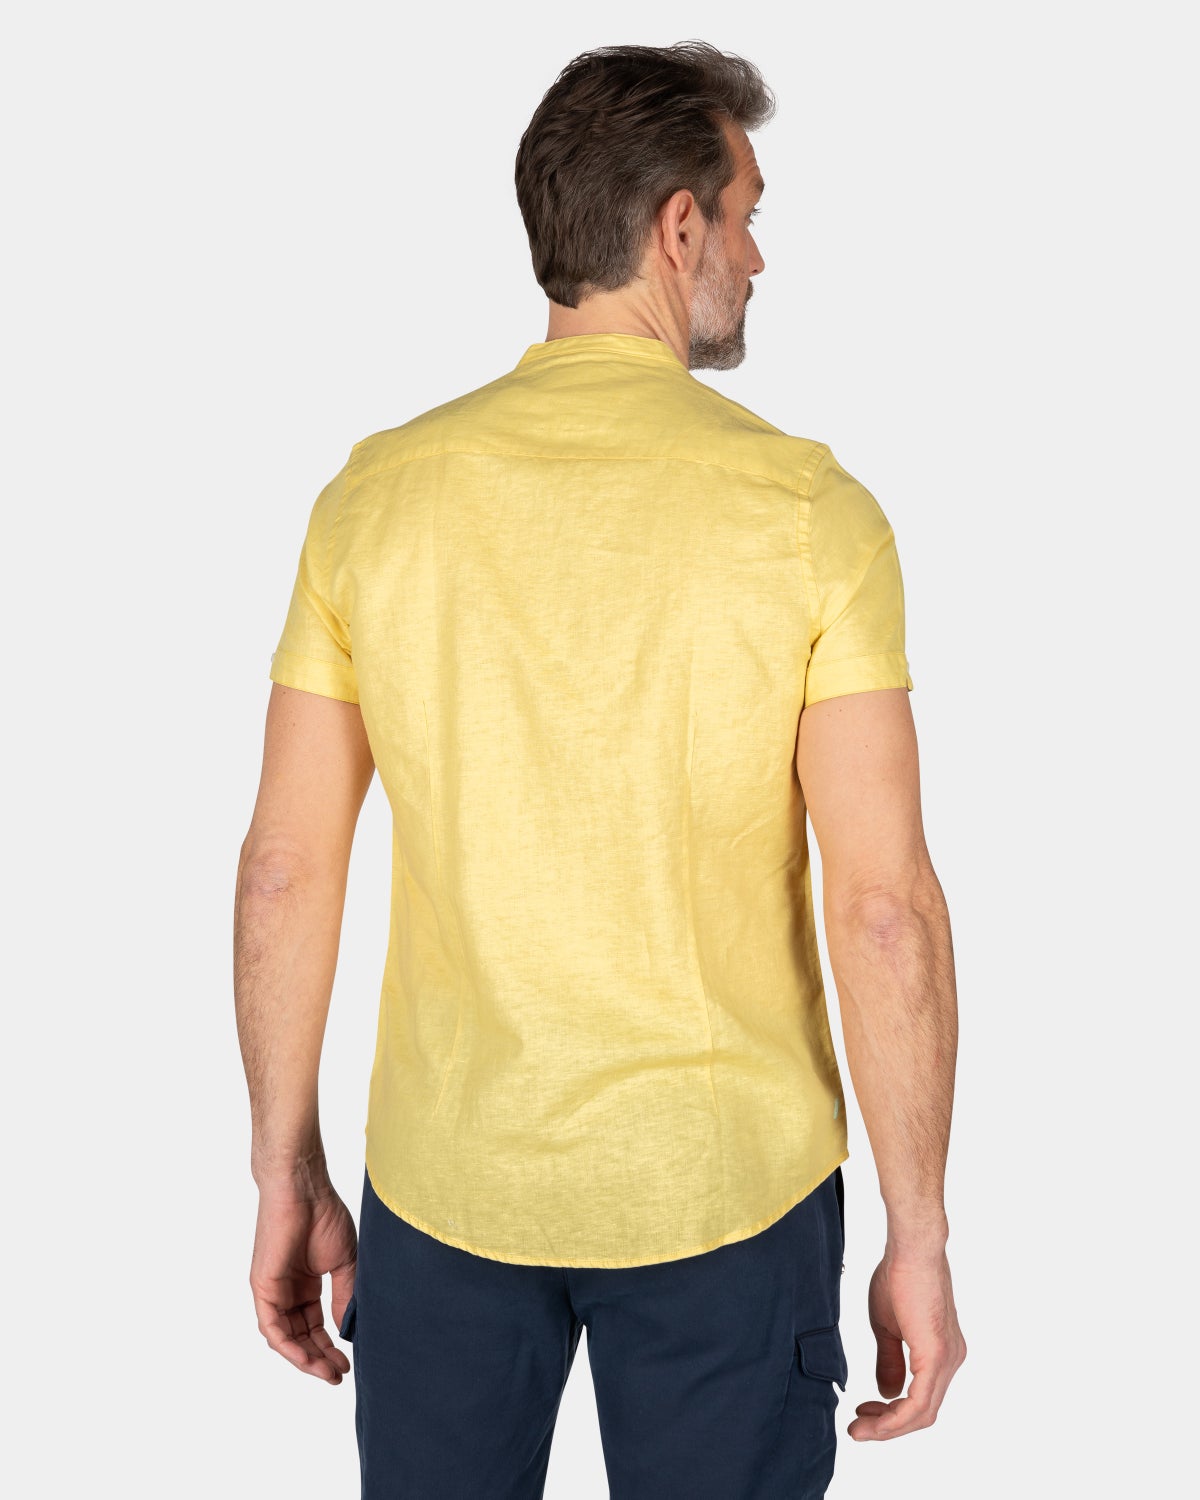 Kragenloses Hemd mit kurzen Ärmeln - Iguana Yellow